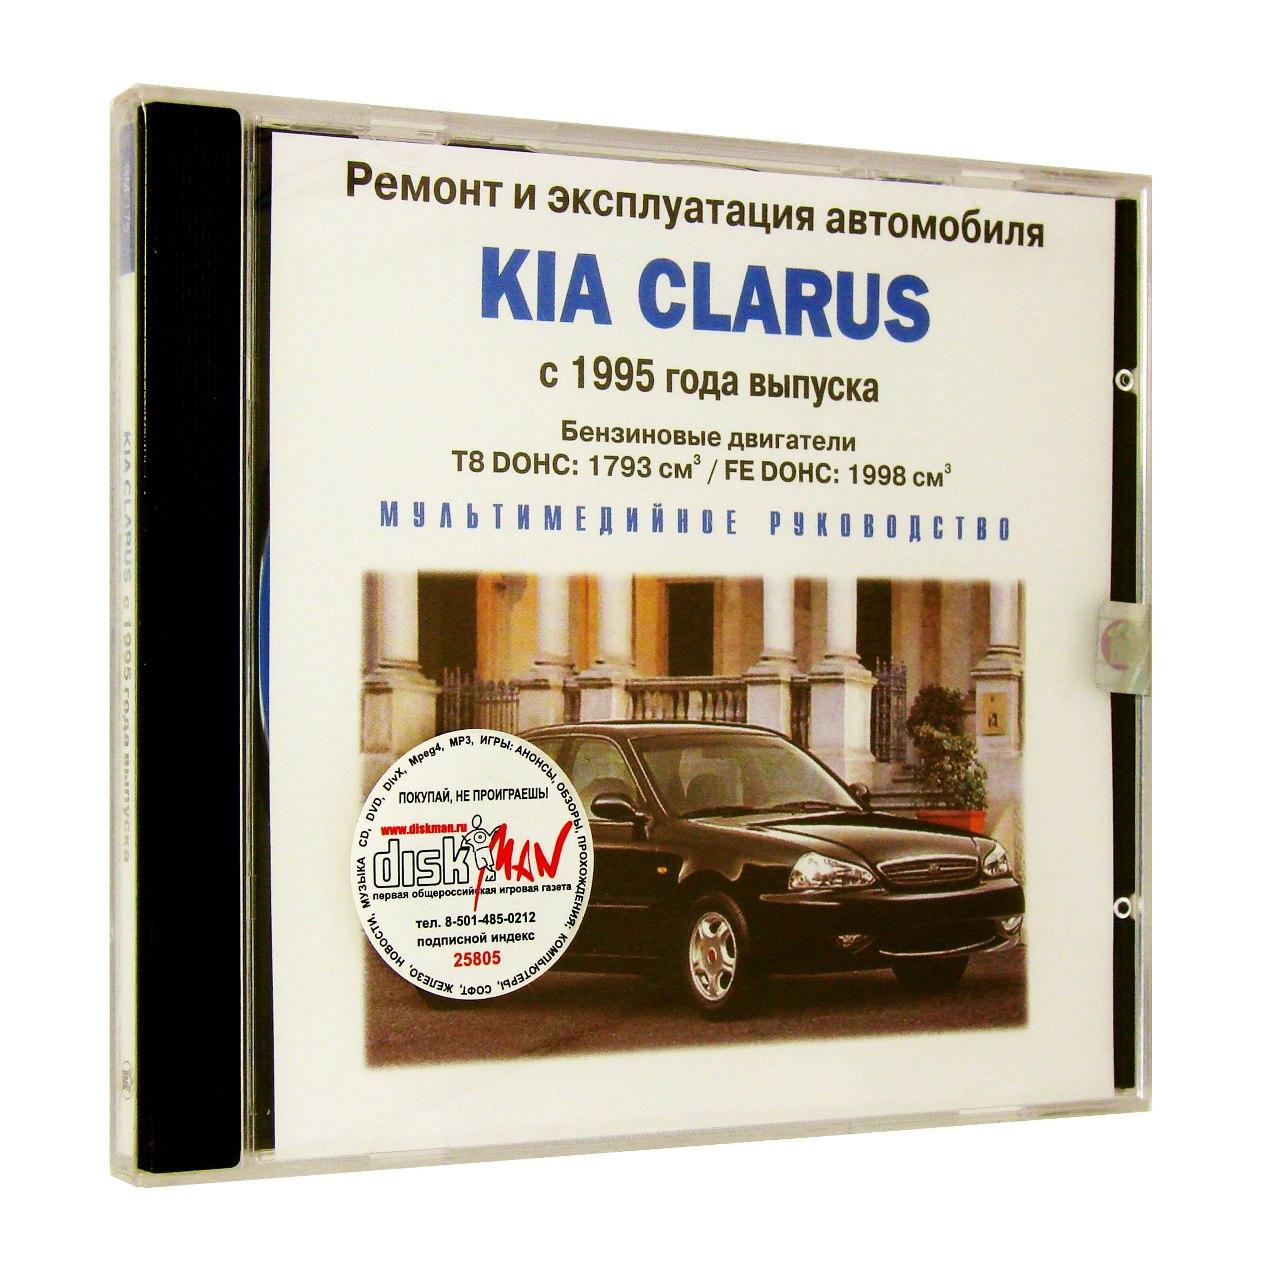 Компьютерный компакт-диск Kia Clarus c 1995 ремонт и эксплуатация автомобиля (ПК), фирма "RMG Multimedia", 1CD